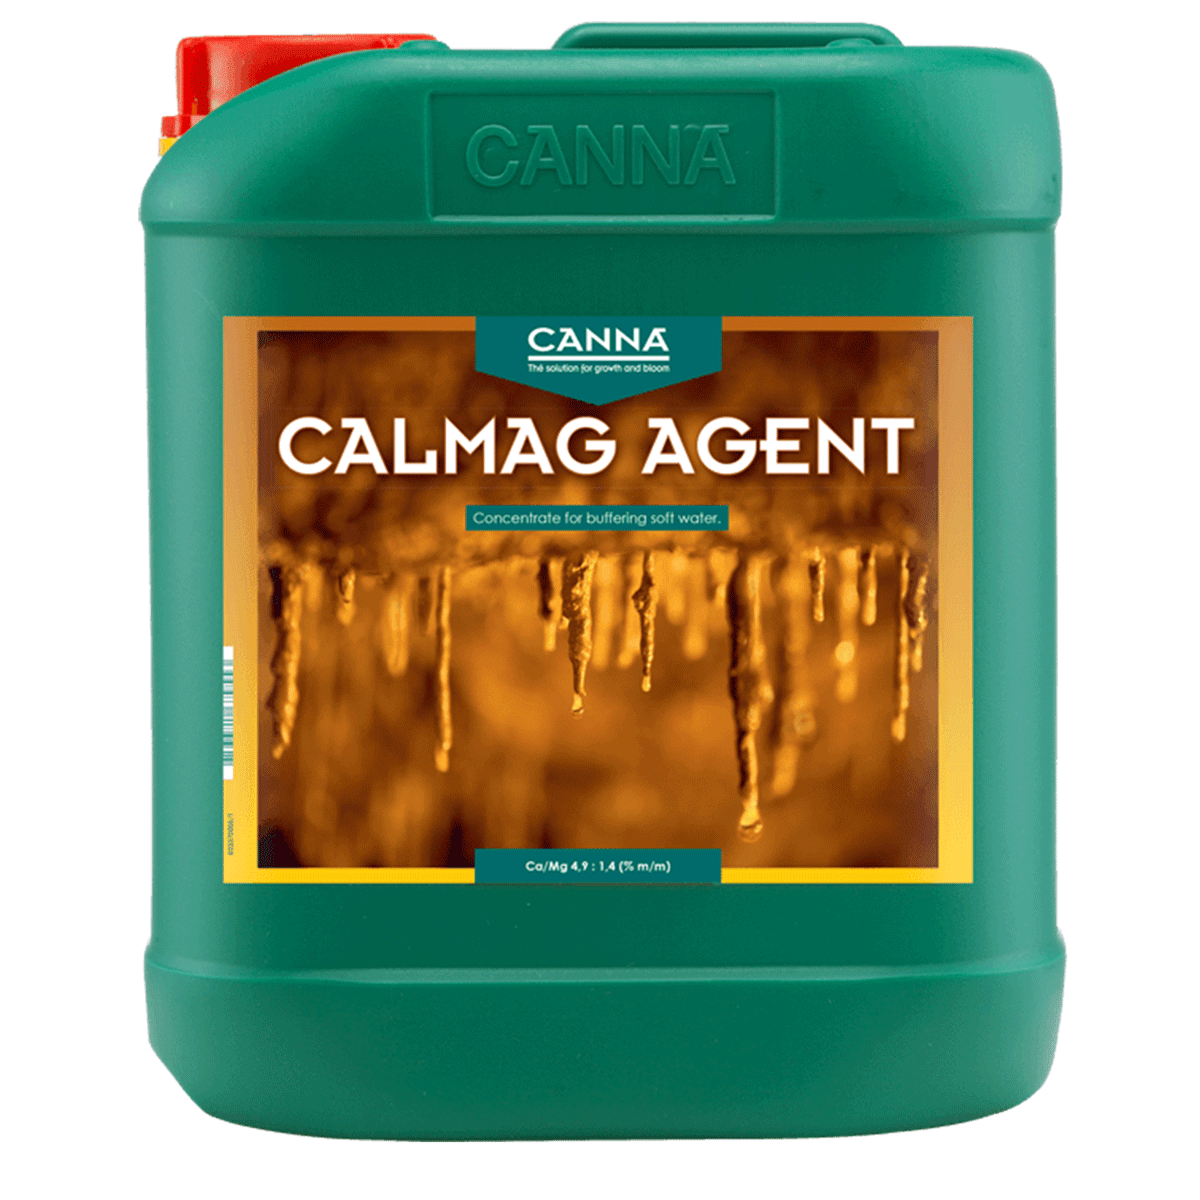 Canna CalMag Agent, 5 l